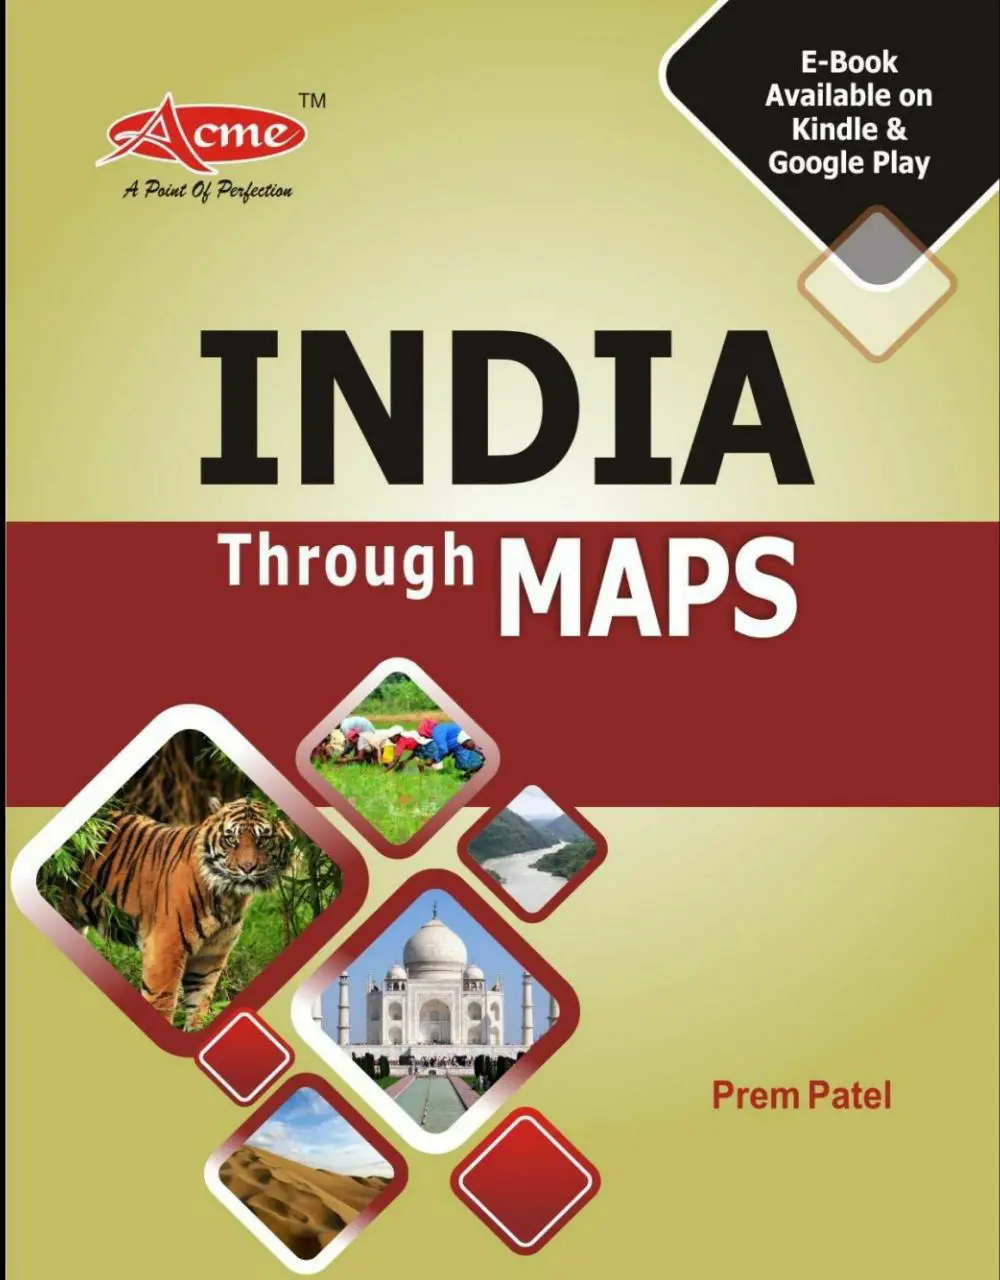 India through Maps Prem Patel PDF